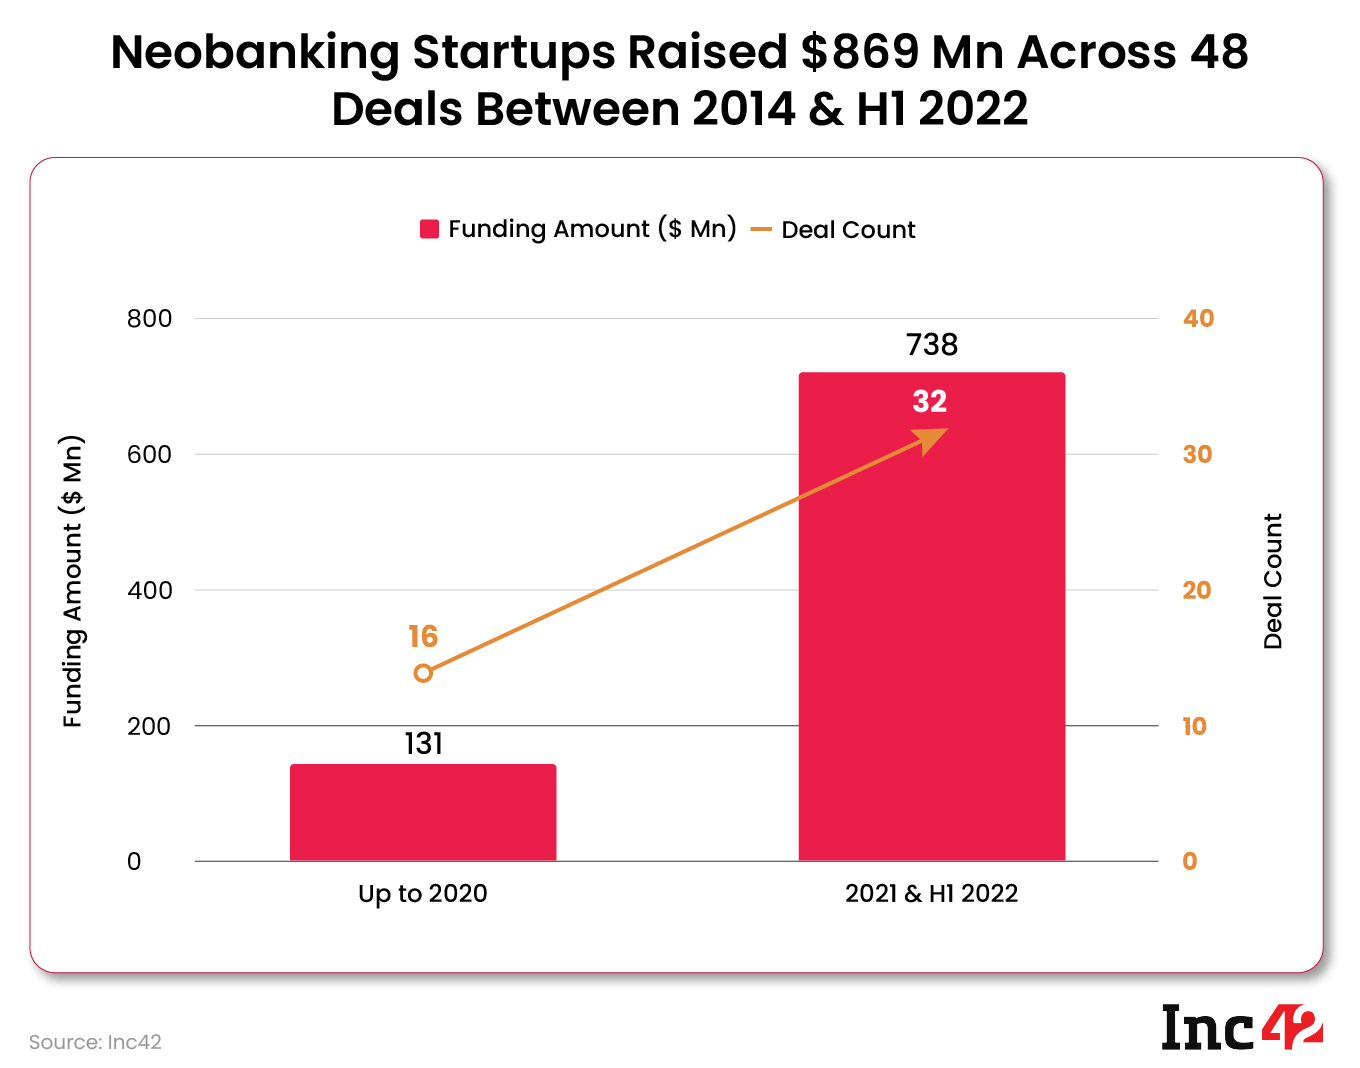 Neobanking startups raised $889 Mn across 48 deals between 2014 & H1 2022